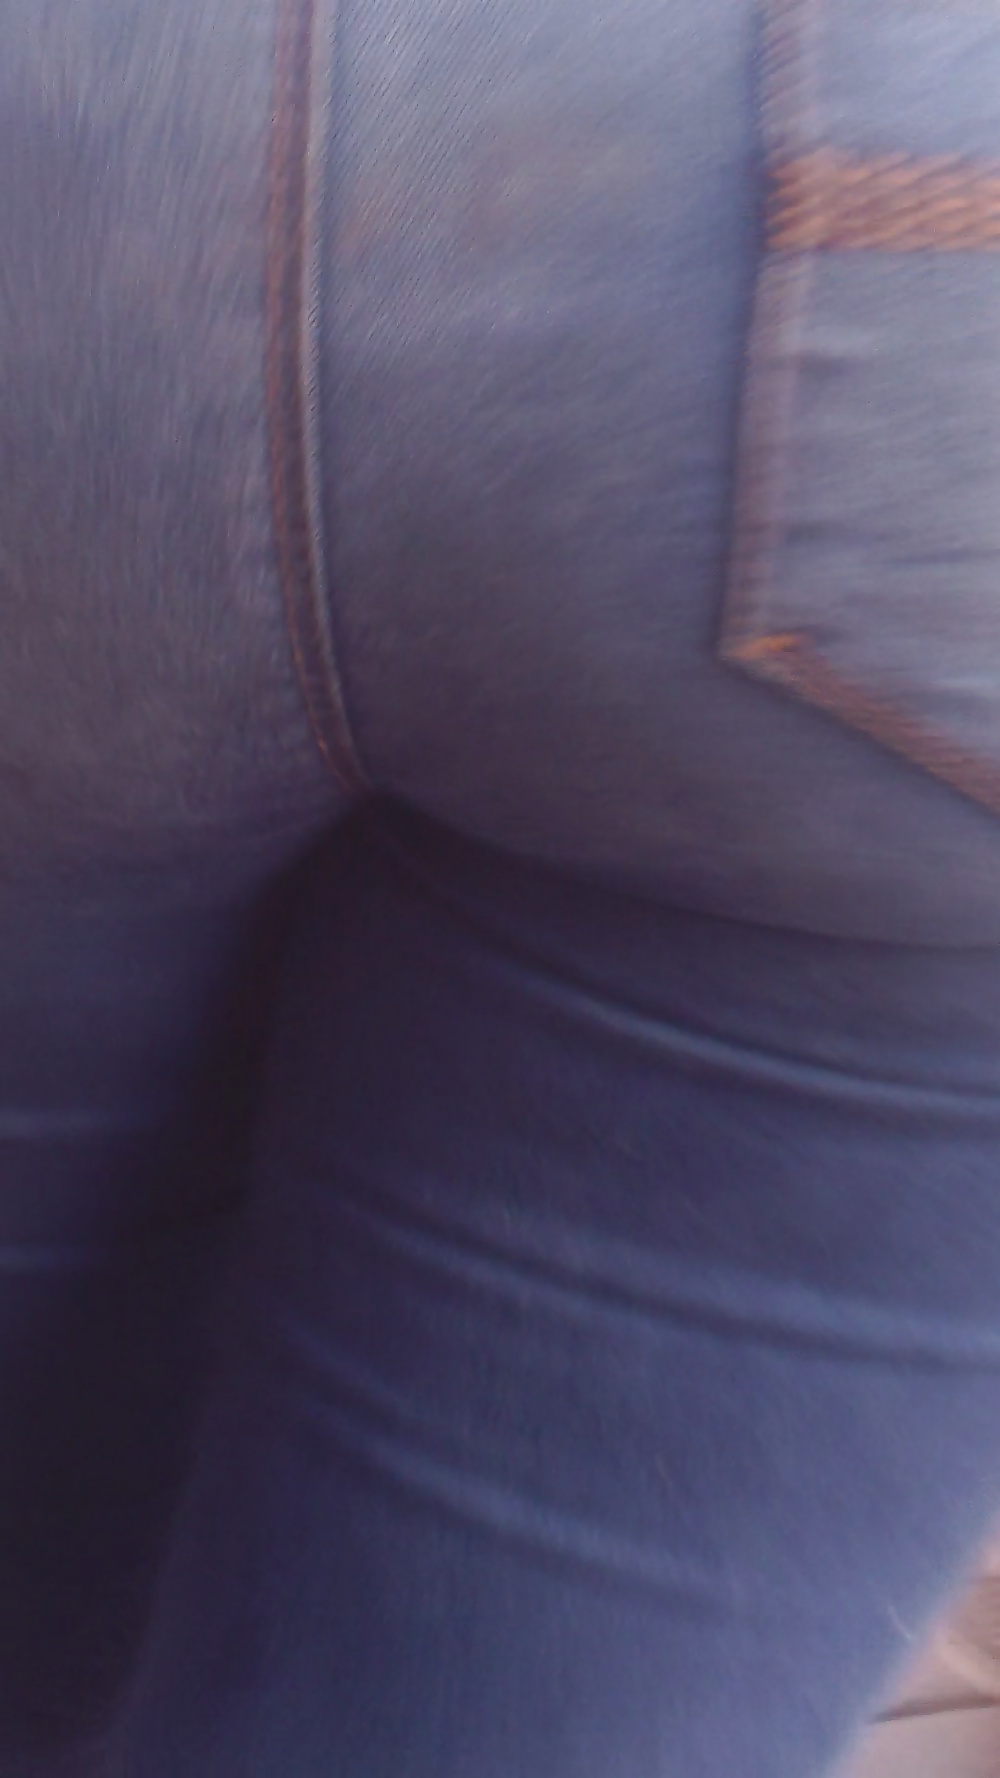 Popular teen girls ass & butt in jeans Part 7 #39949980